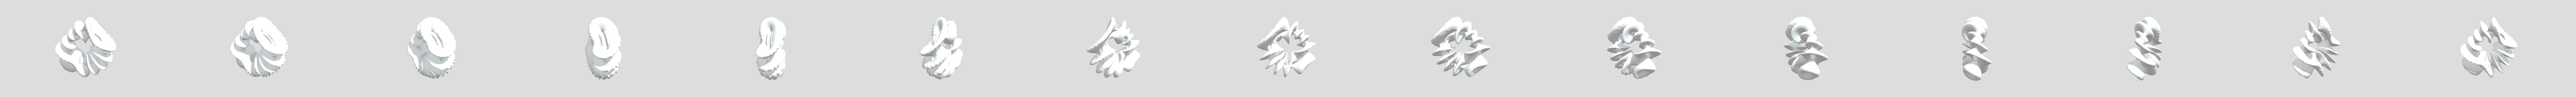 Abstract 3D models - Sketchfab